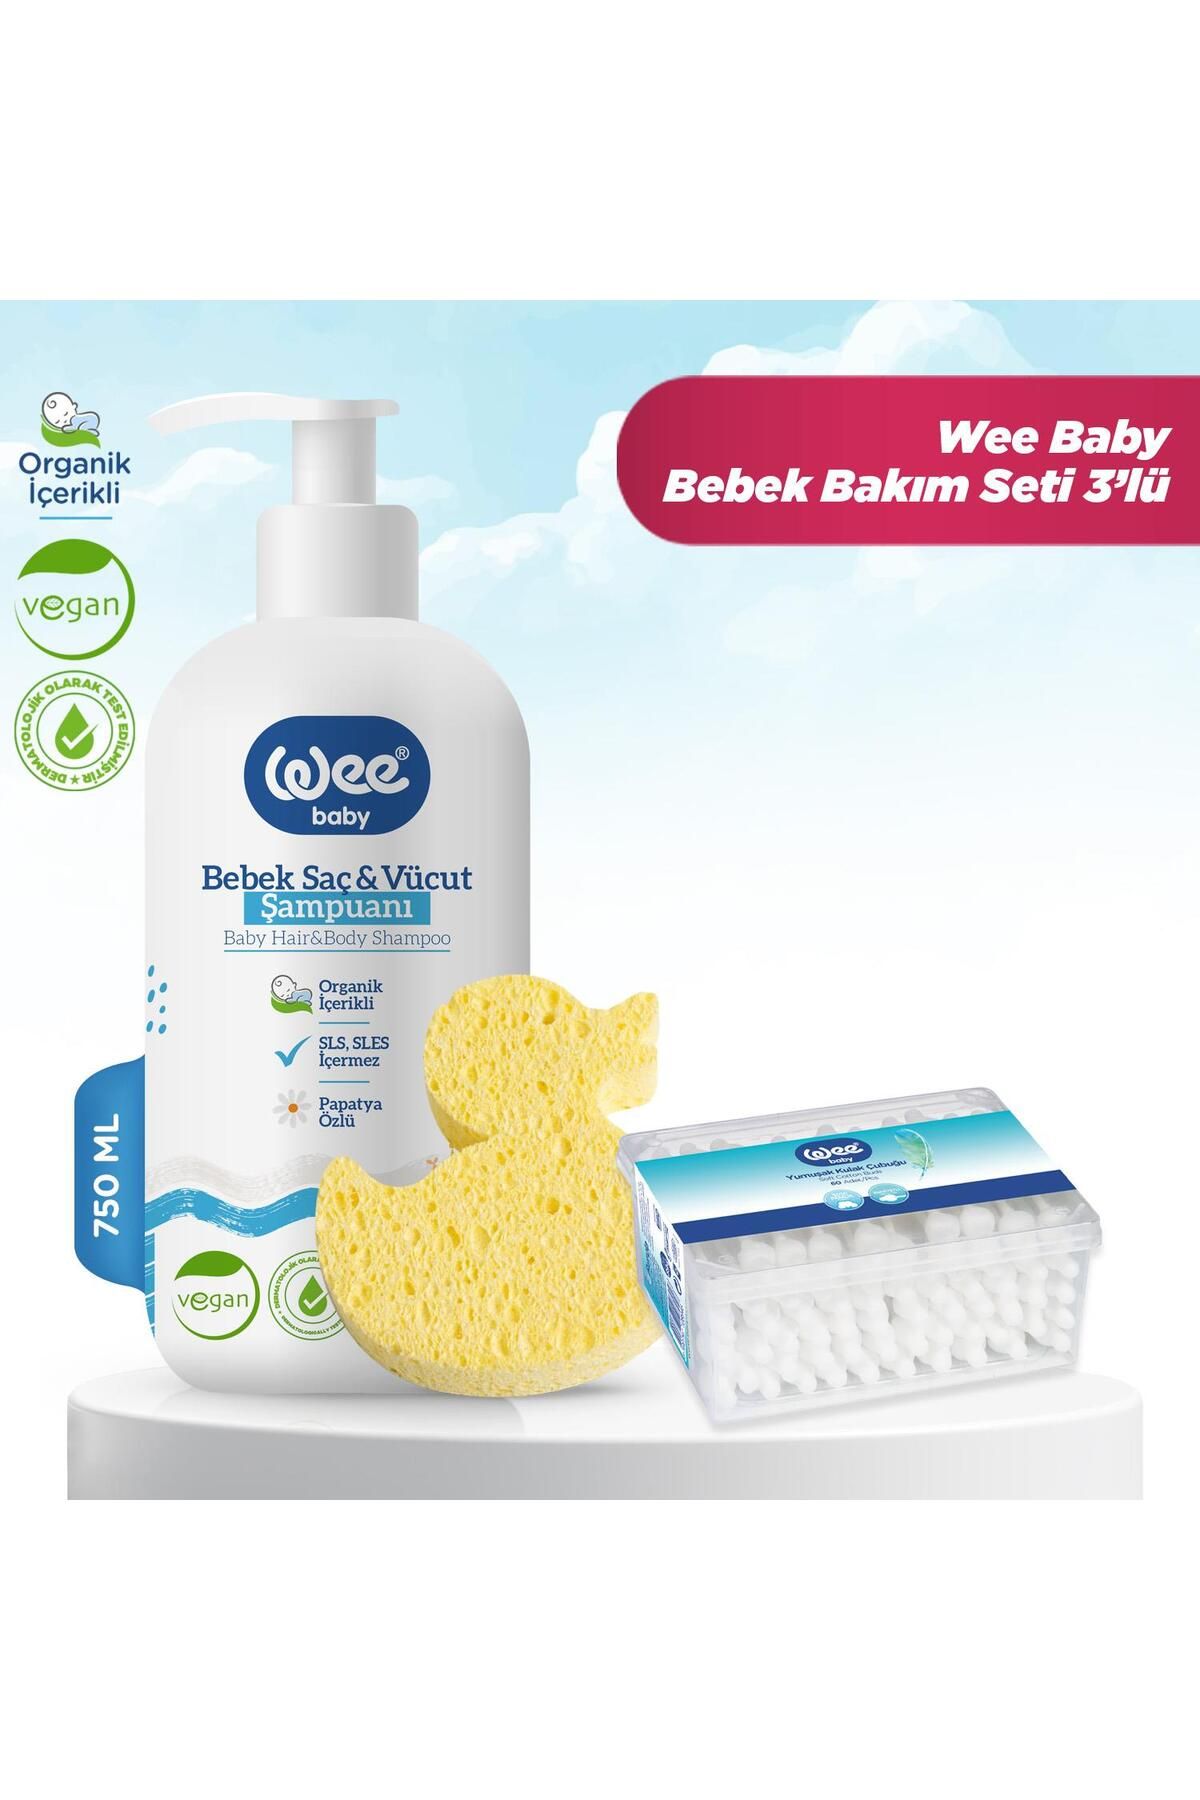 Wee Baby Bebek Şampuan 750 Ml + Banyo Süngeri + Emniyetli Kulak Çubuğu 3'lü Bakım Seti